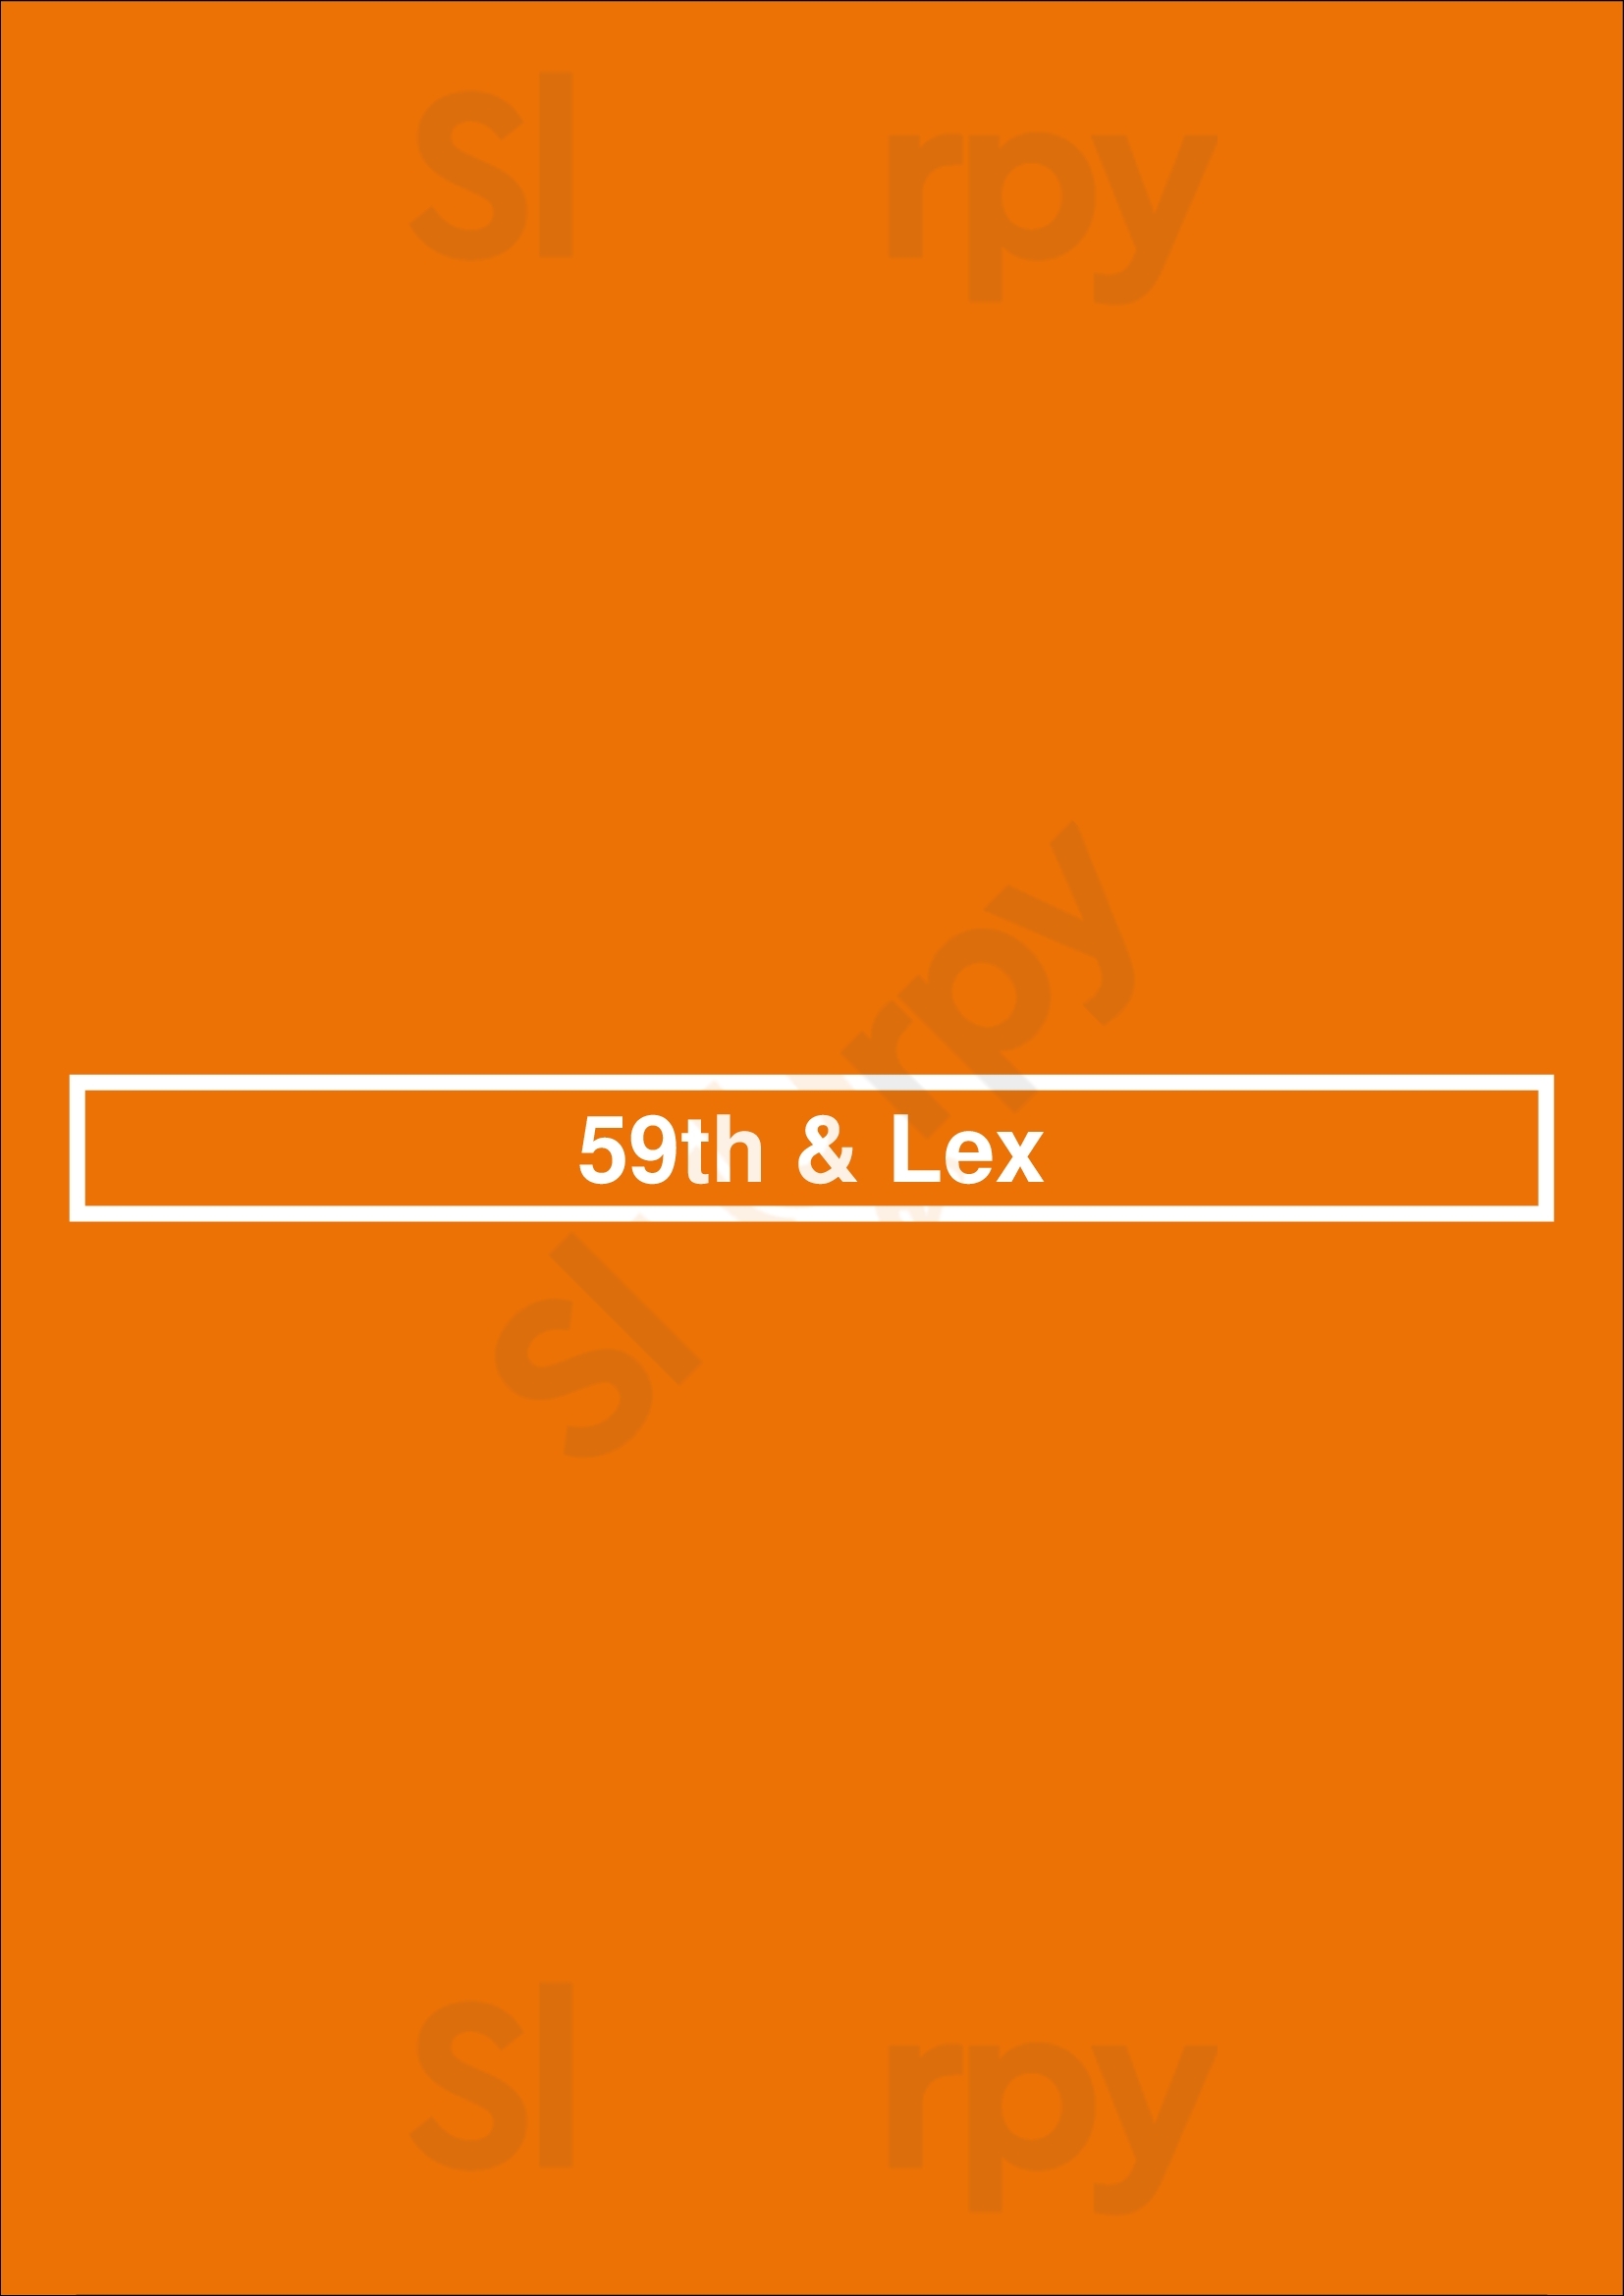 59th & Lex Newport Beach Menu - 1